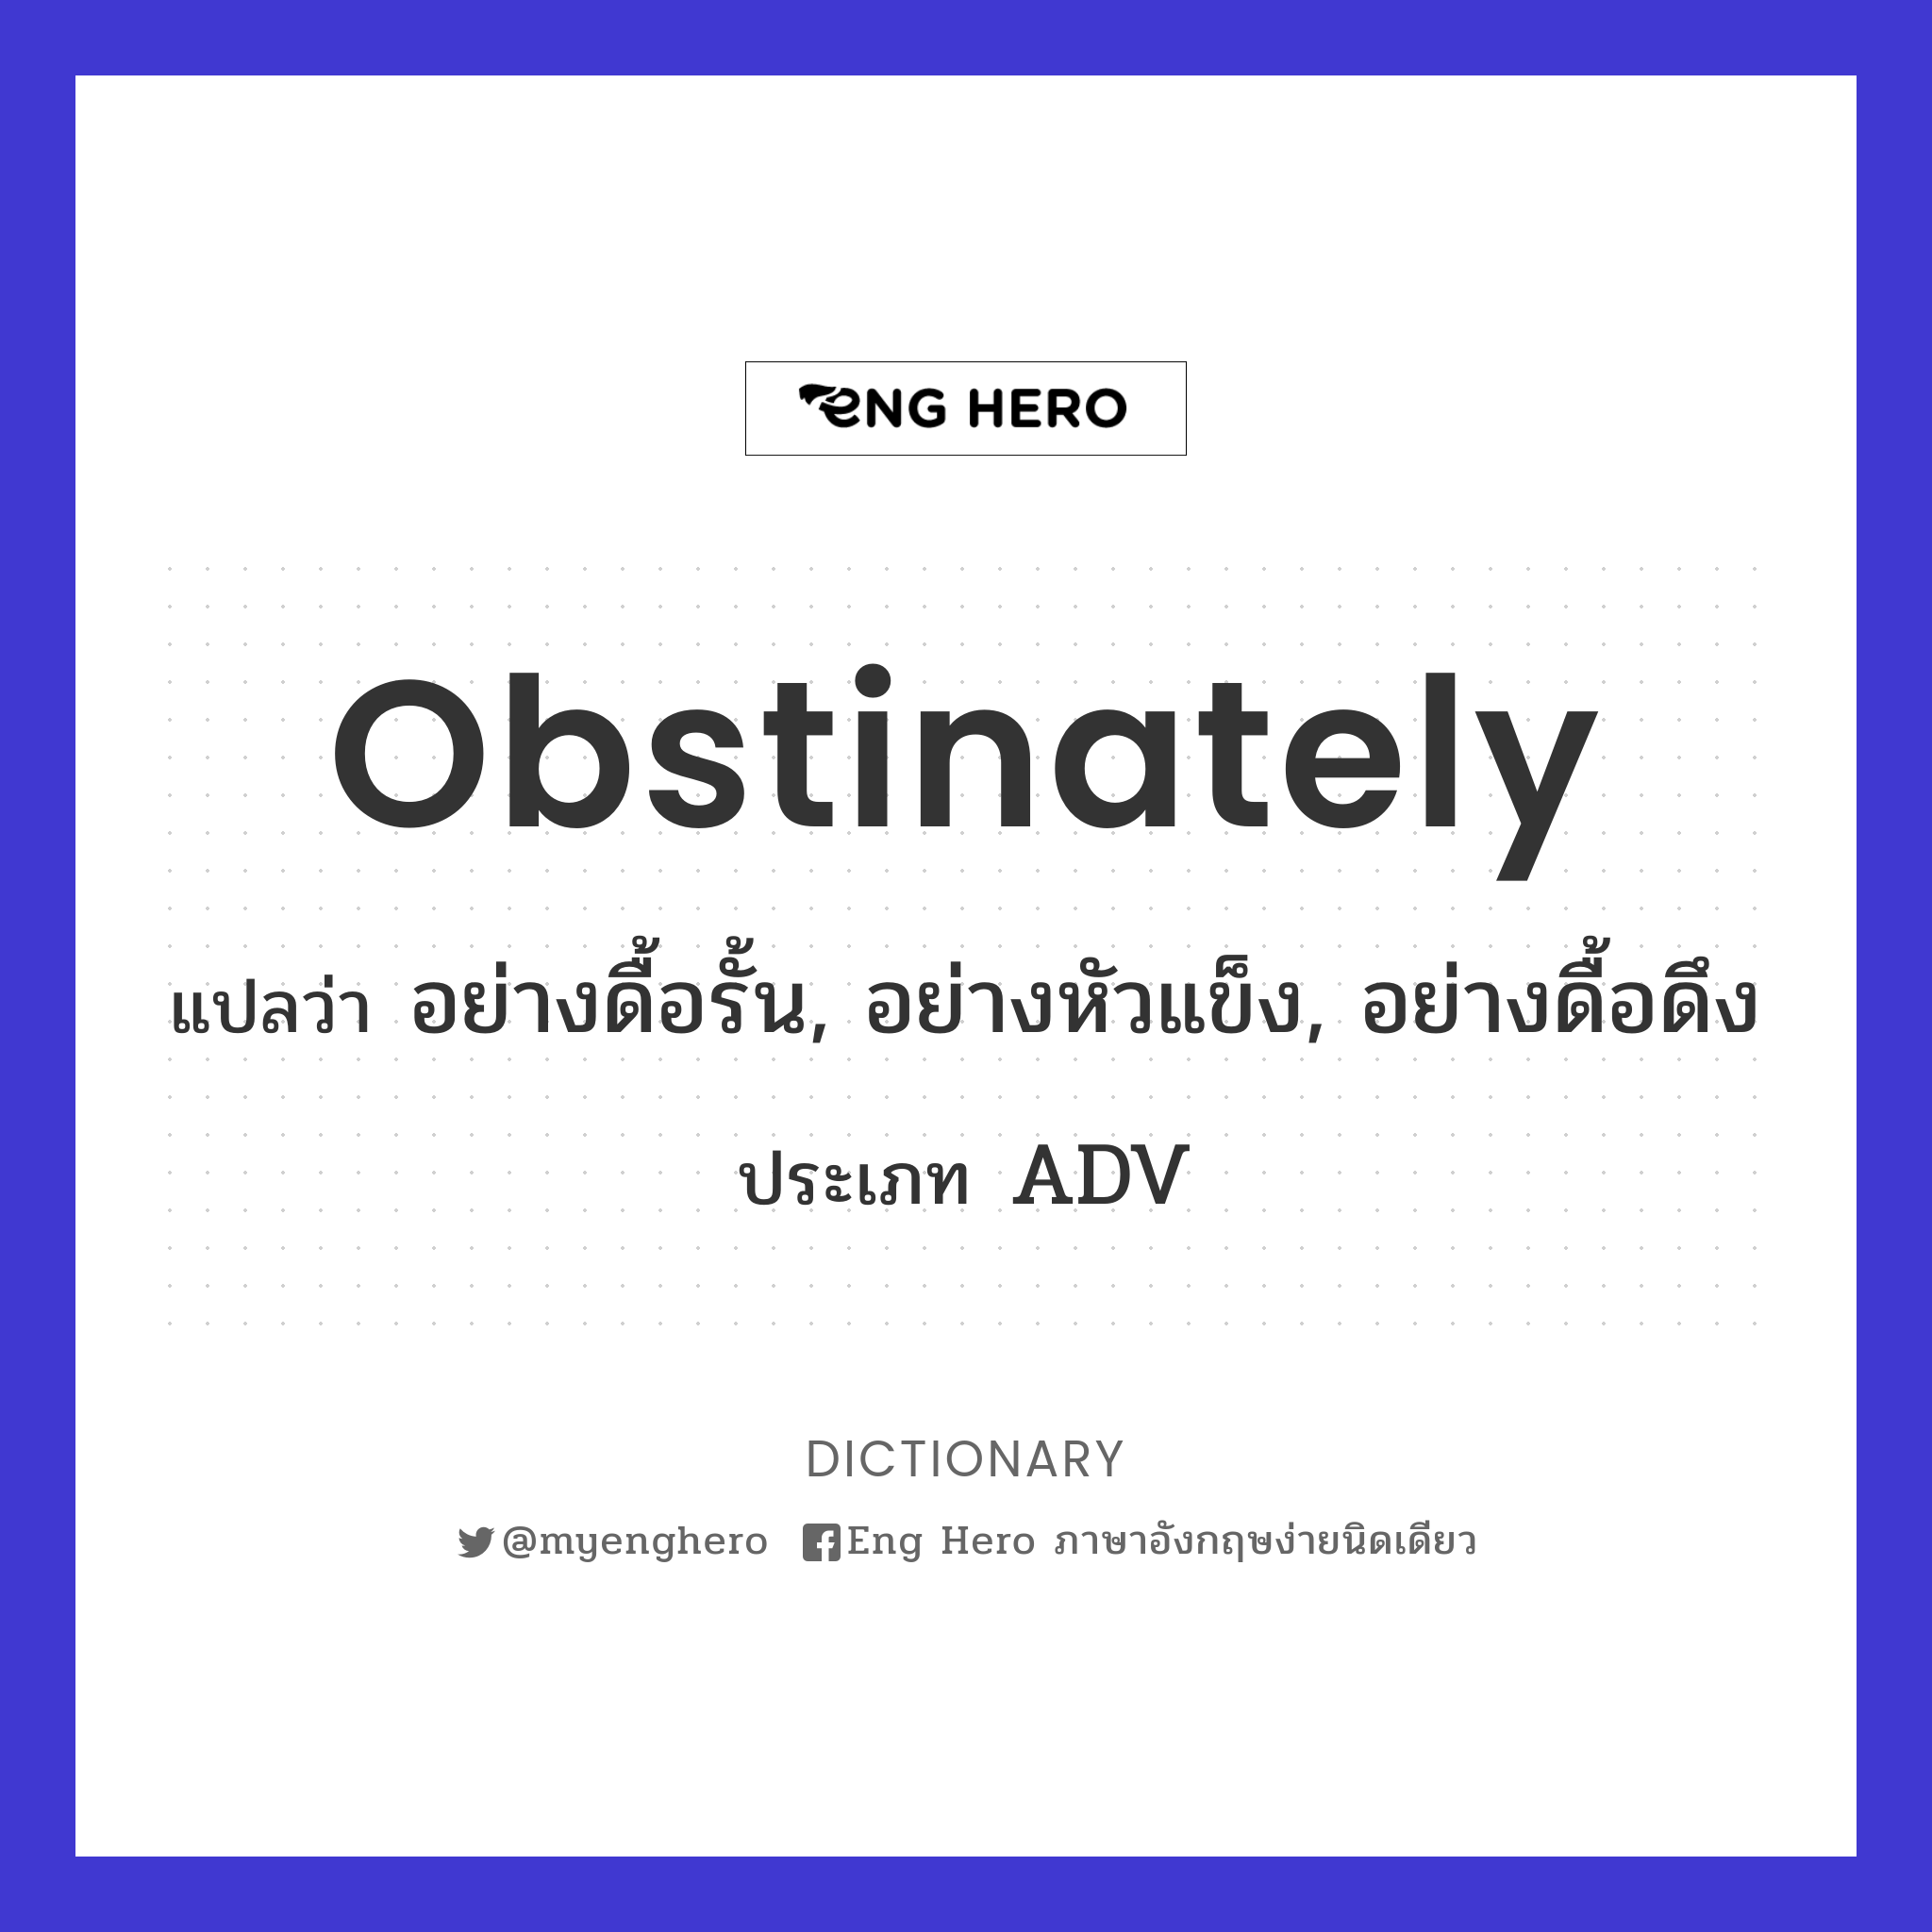 obstinately